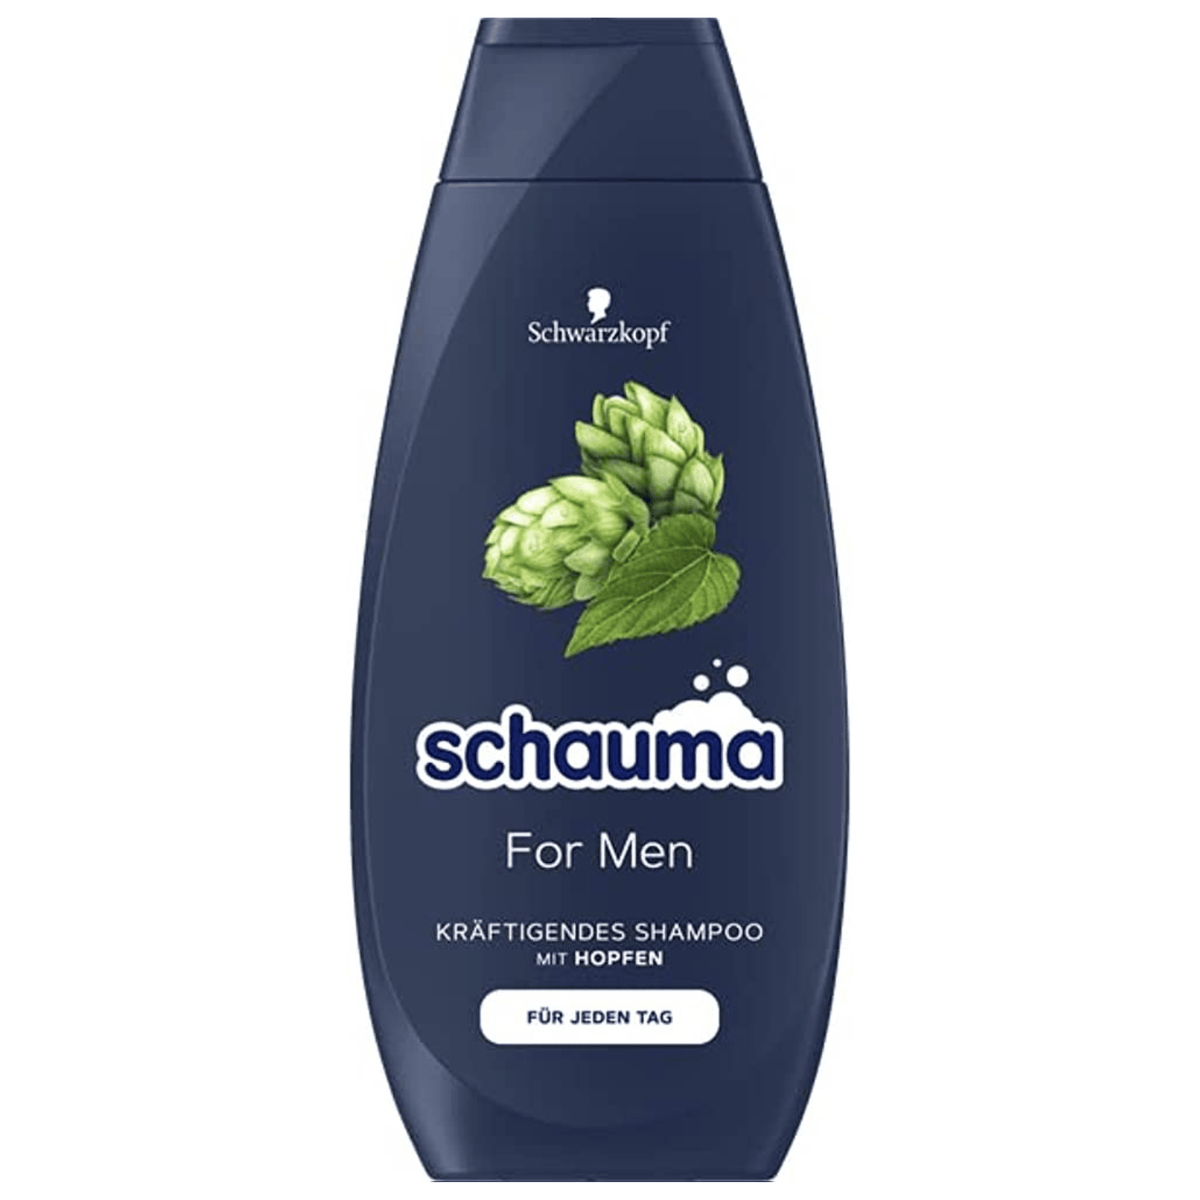 Alternate Image of Shampoo For Men